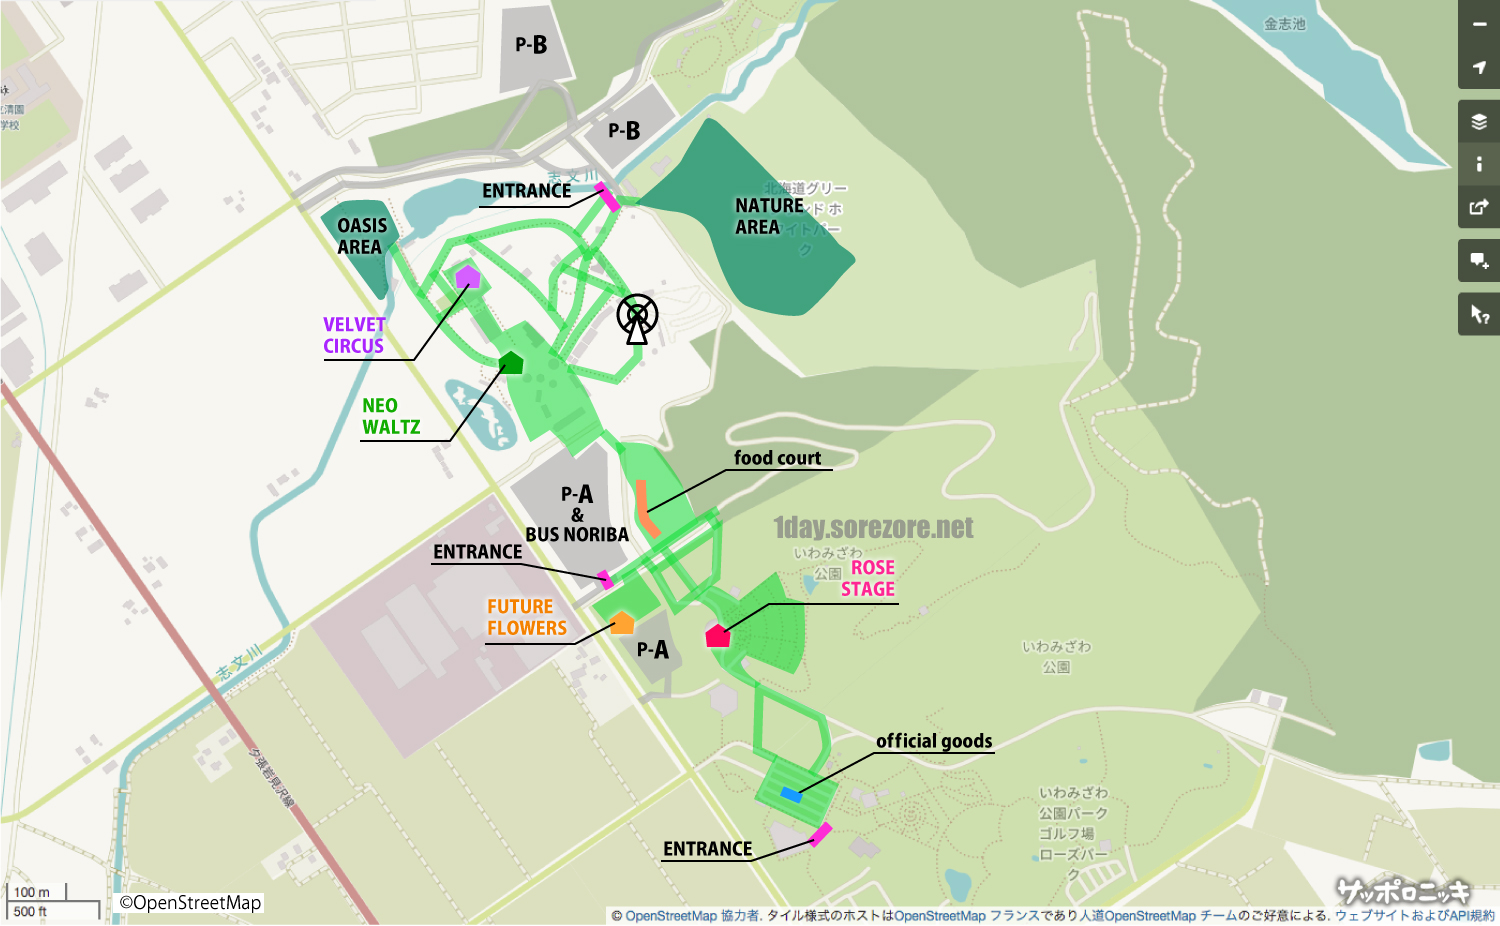 【JOIN ALIVE 2022】会場MAPを札幌駅前地図と重ねてみた